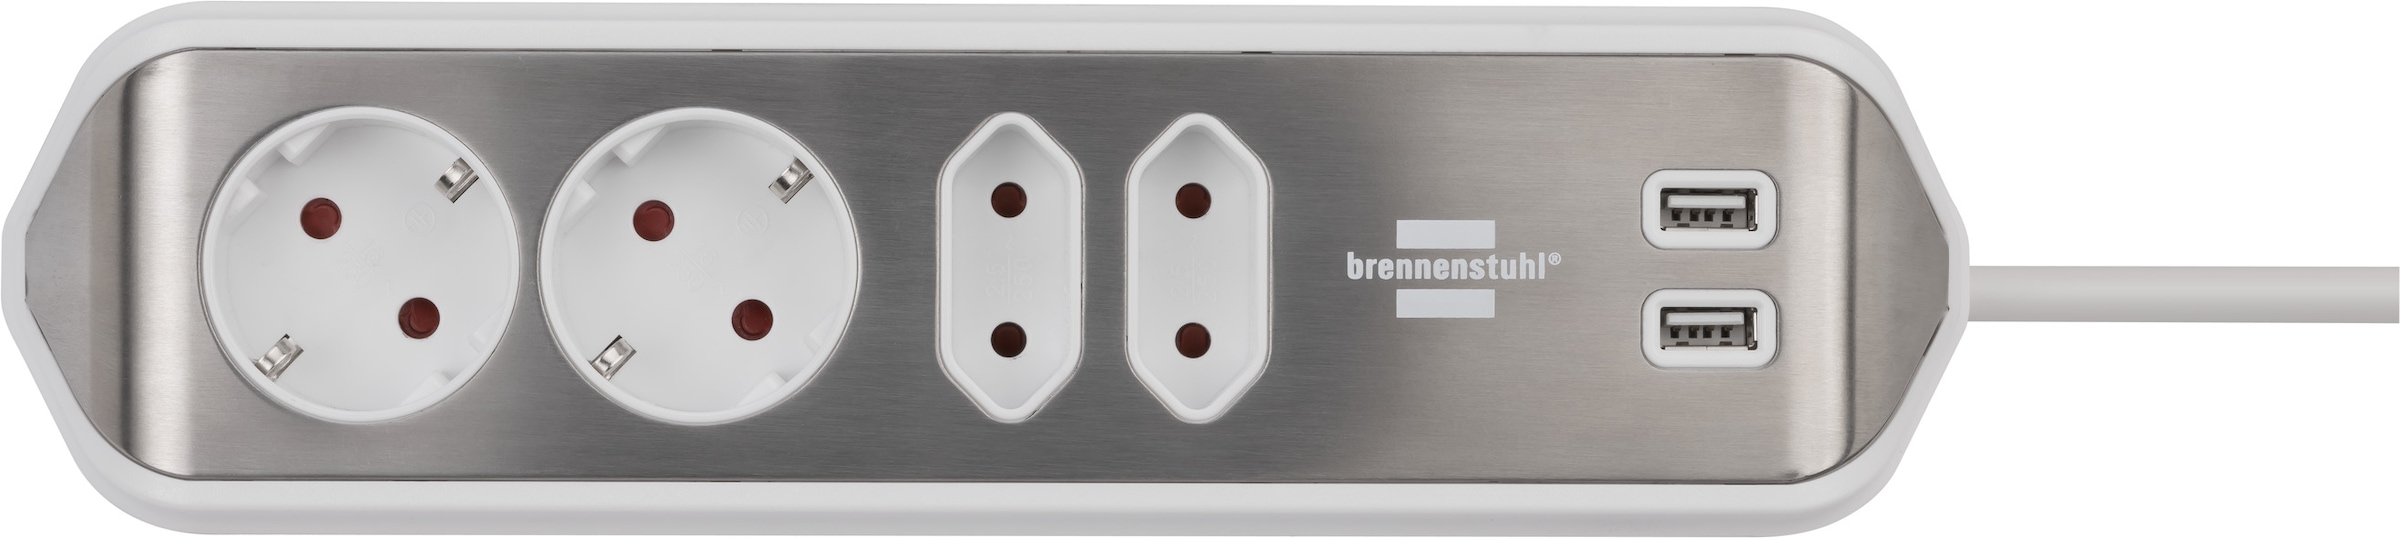 Brennenstuhl Steckdosenleiste »estilo«, 4-fach, 2x Schutzkontakt-Steckdosen, 2x Euro-Steckdosen, USB-Ladefunktion